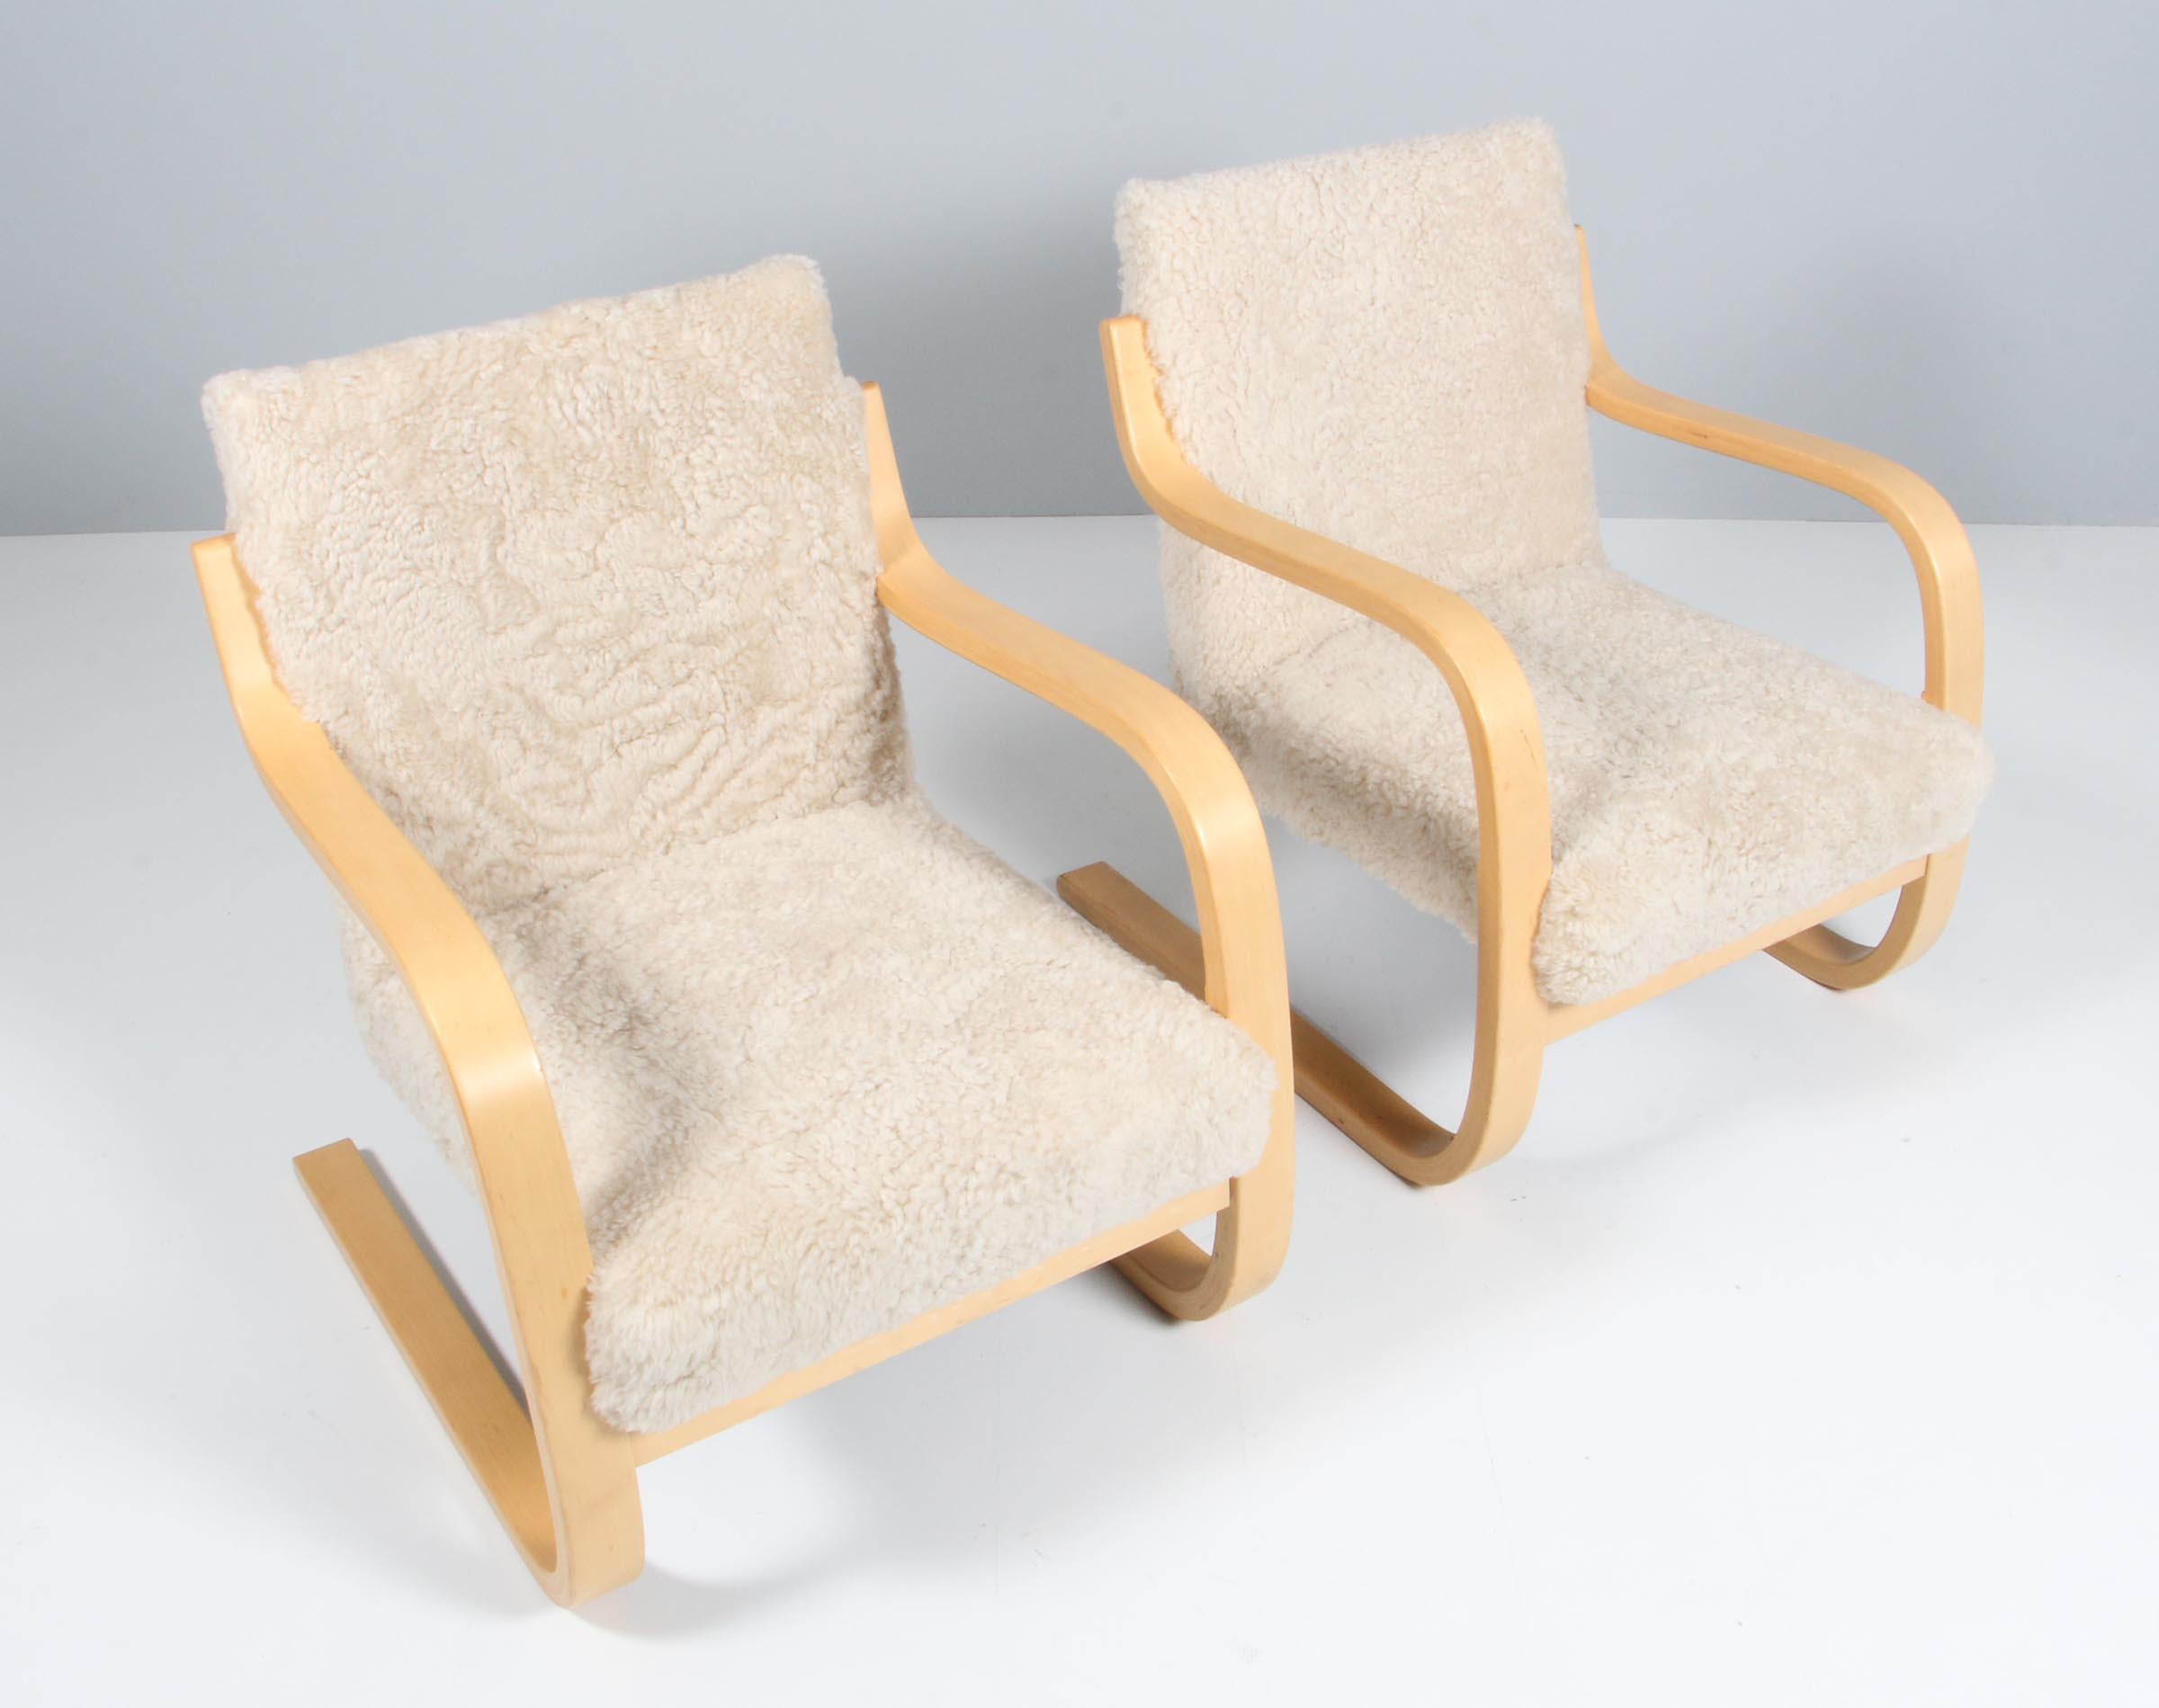 Chaises longues fabriquées par Alvar Aalto, vers 1960.

New tapissé de peau d'agneau

Contreplaqué de bouleau cintré et fibre végétale tressée. 
Mesures : 74 x 61 x 69 cm.
 